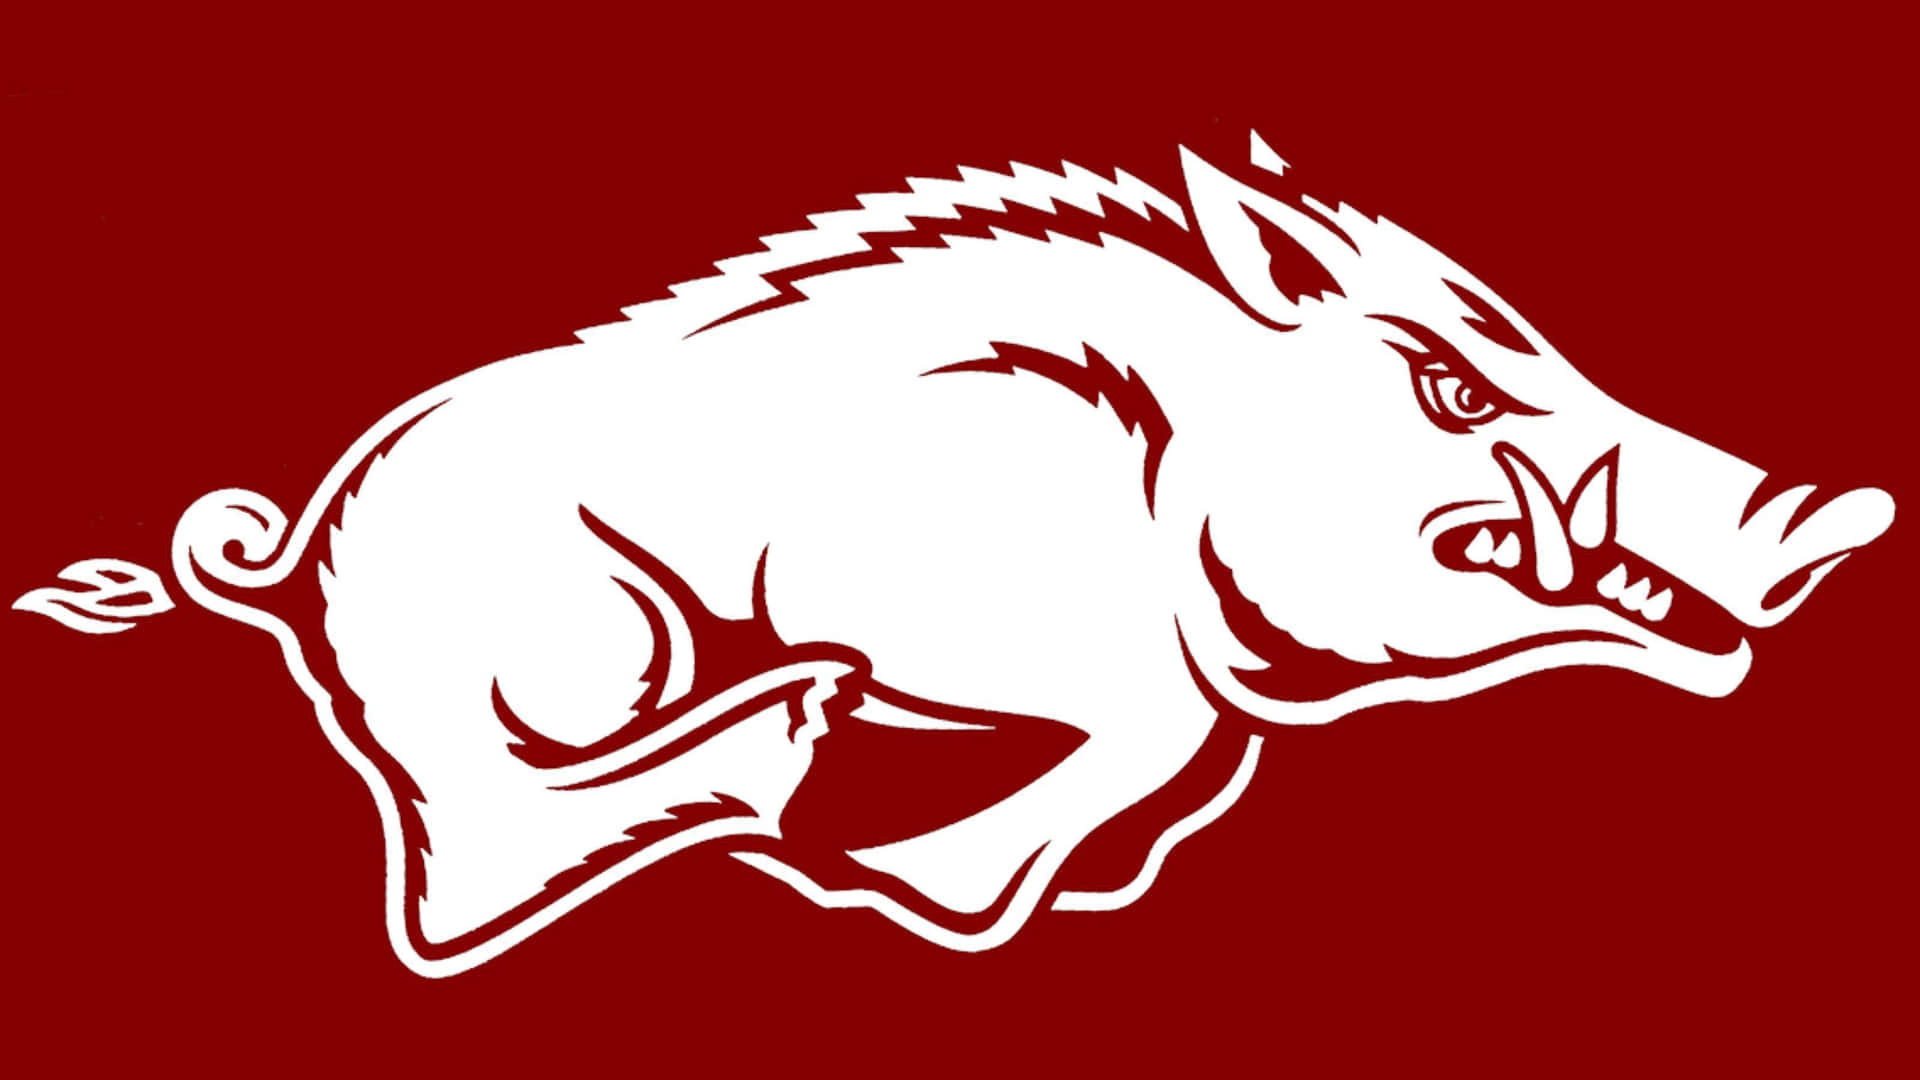 Einweißes Arkansas Razorback-logo Auf Einem Burgunderroten Hintergrund Wallpaper